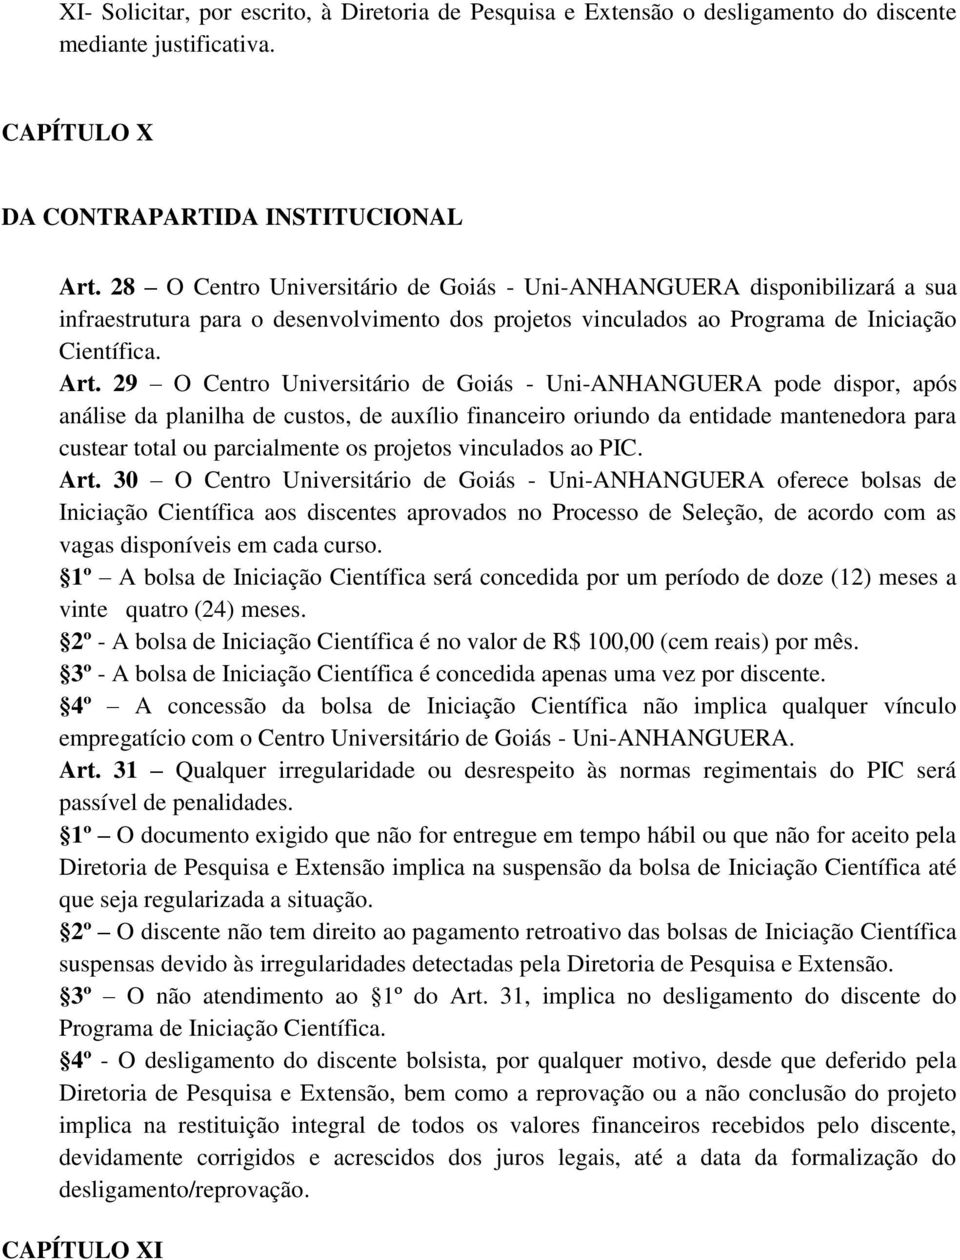 29 O Centro Universitário de Goiás - Uni-ANHANGUERA pode dispor, após análise da planilha de custos, de auxílio financeiro oriundo da entidade mantenedora para custear total ou parcialmente os